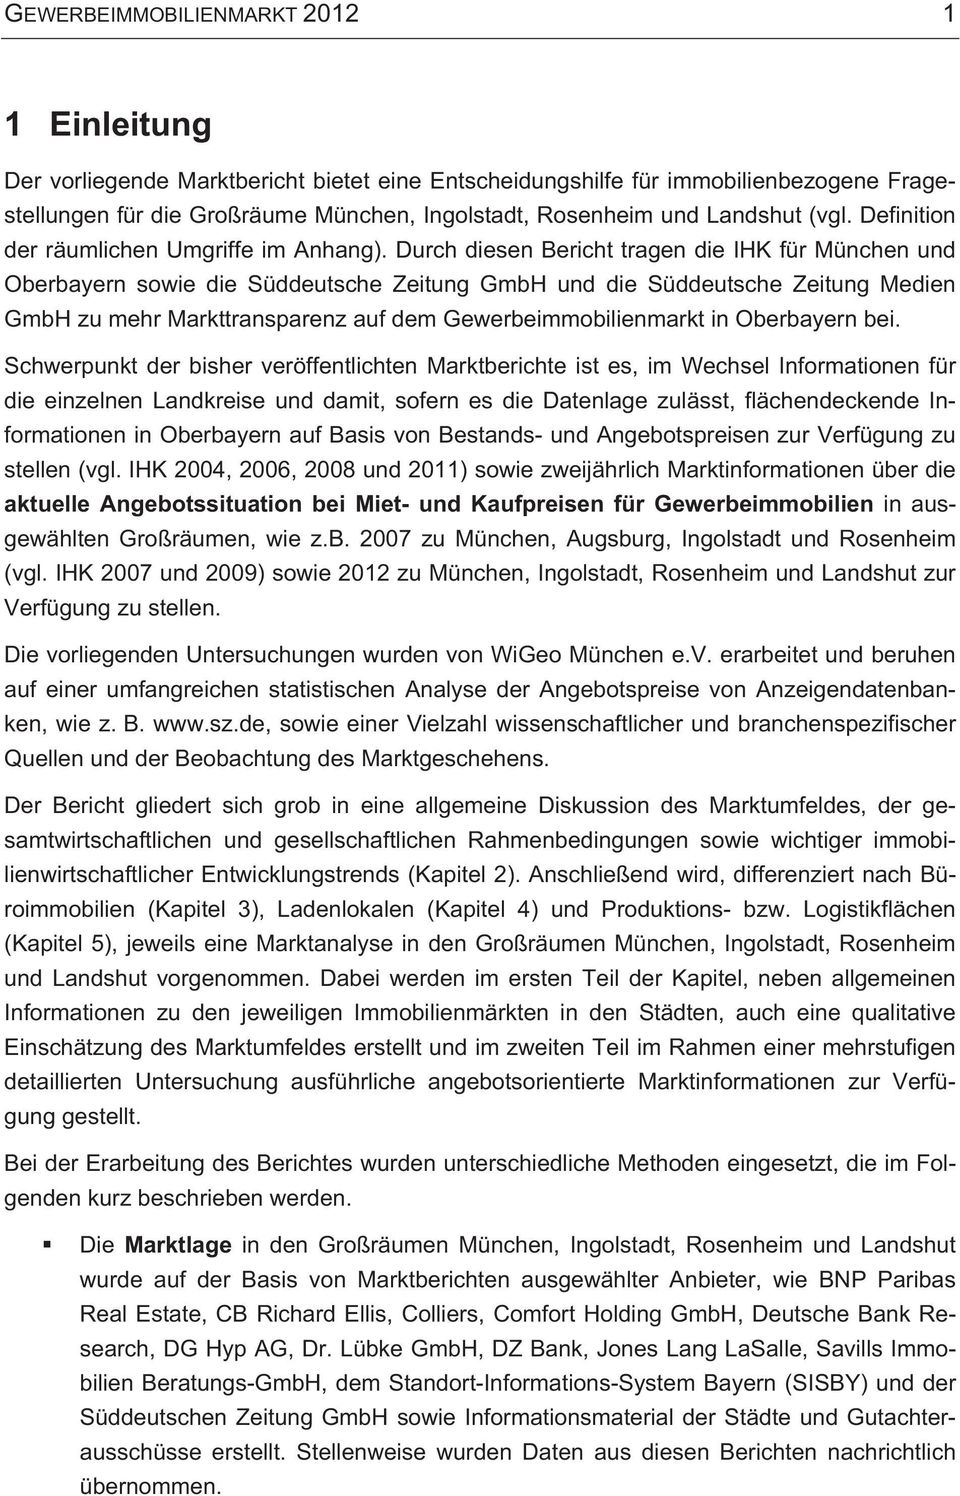 Durch diesen Bericht tragen die IHK für München und Oberbayern sowie die Süddeutsche Zeitung GmbH und die Süddeutsche Zeitung Medien GmbH zu mehr Markttransparenz auf dem Gewerbeimmobilienmarkt in